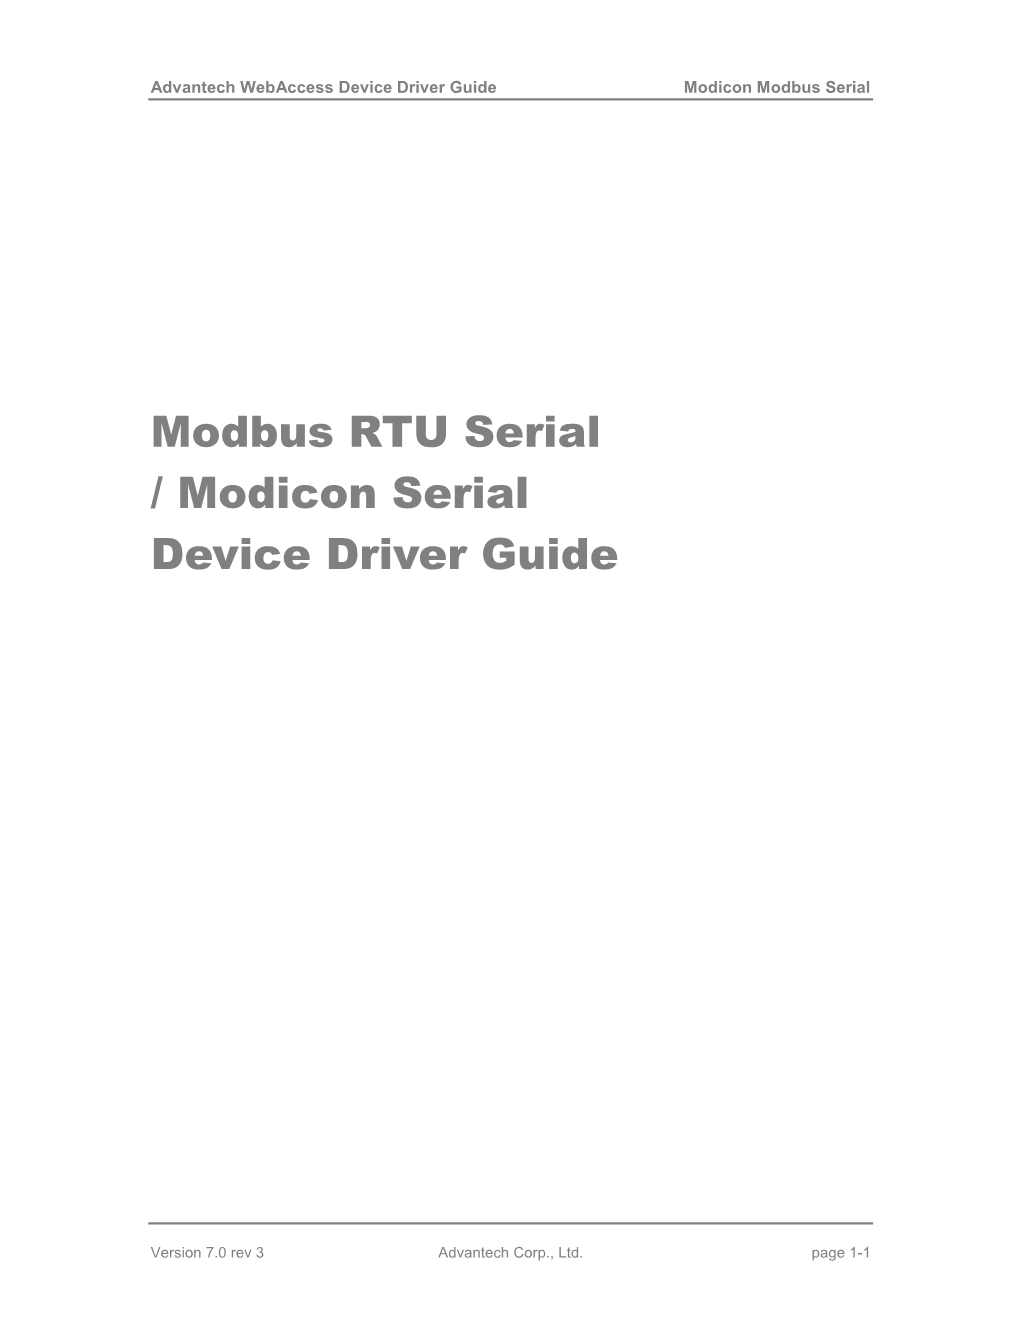 Modicon Modbus Serial Driver Guide